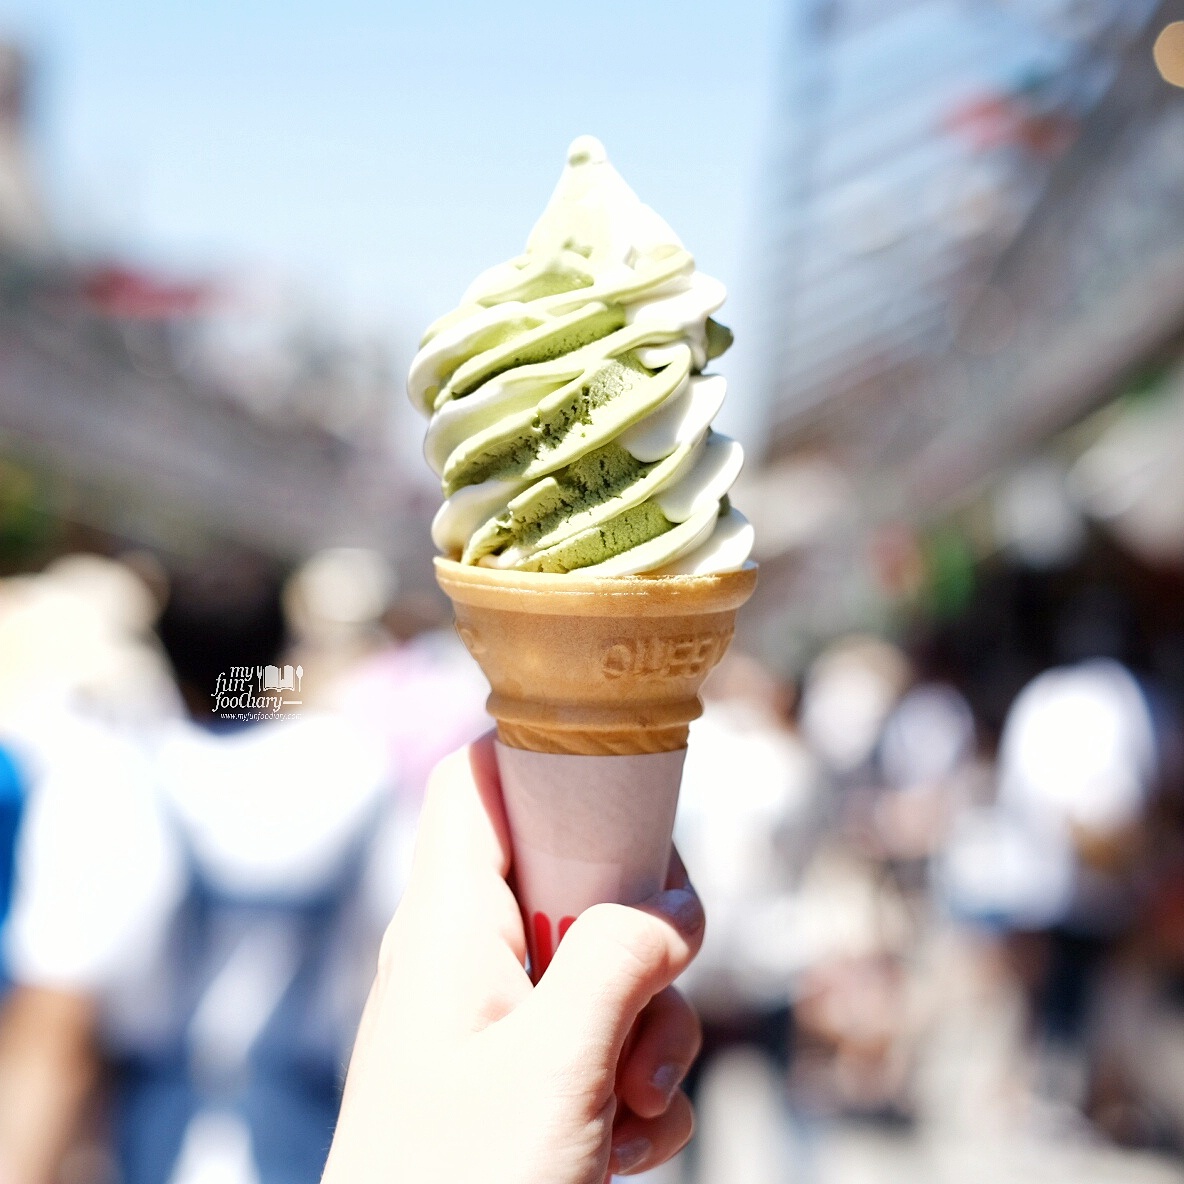 Macha and Vanilla Ice Cream at Asakusa by Myfunfoodiary